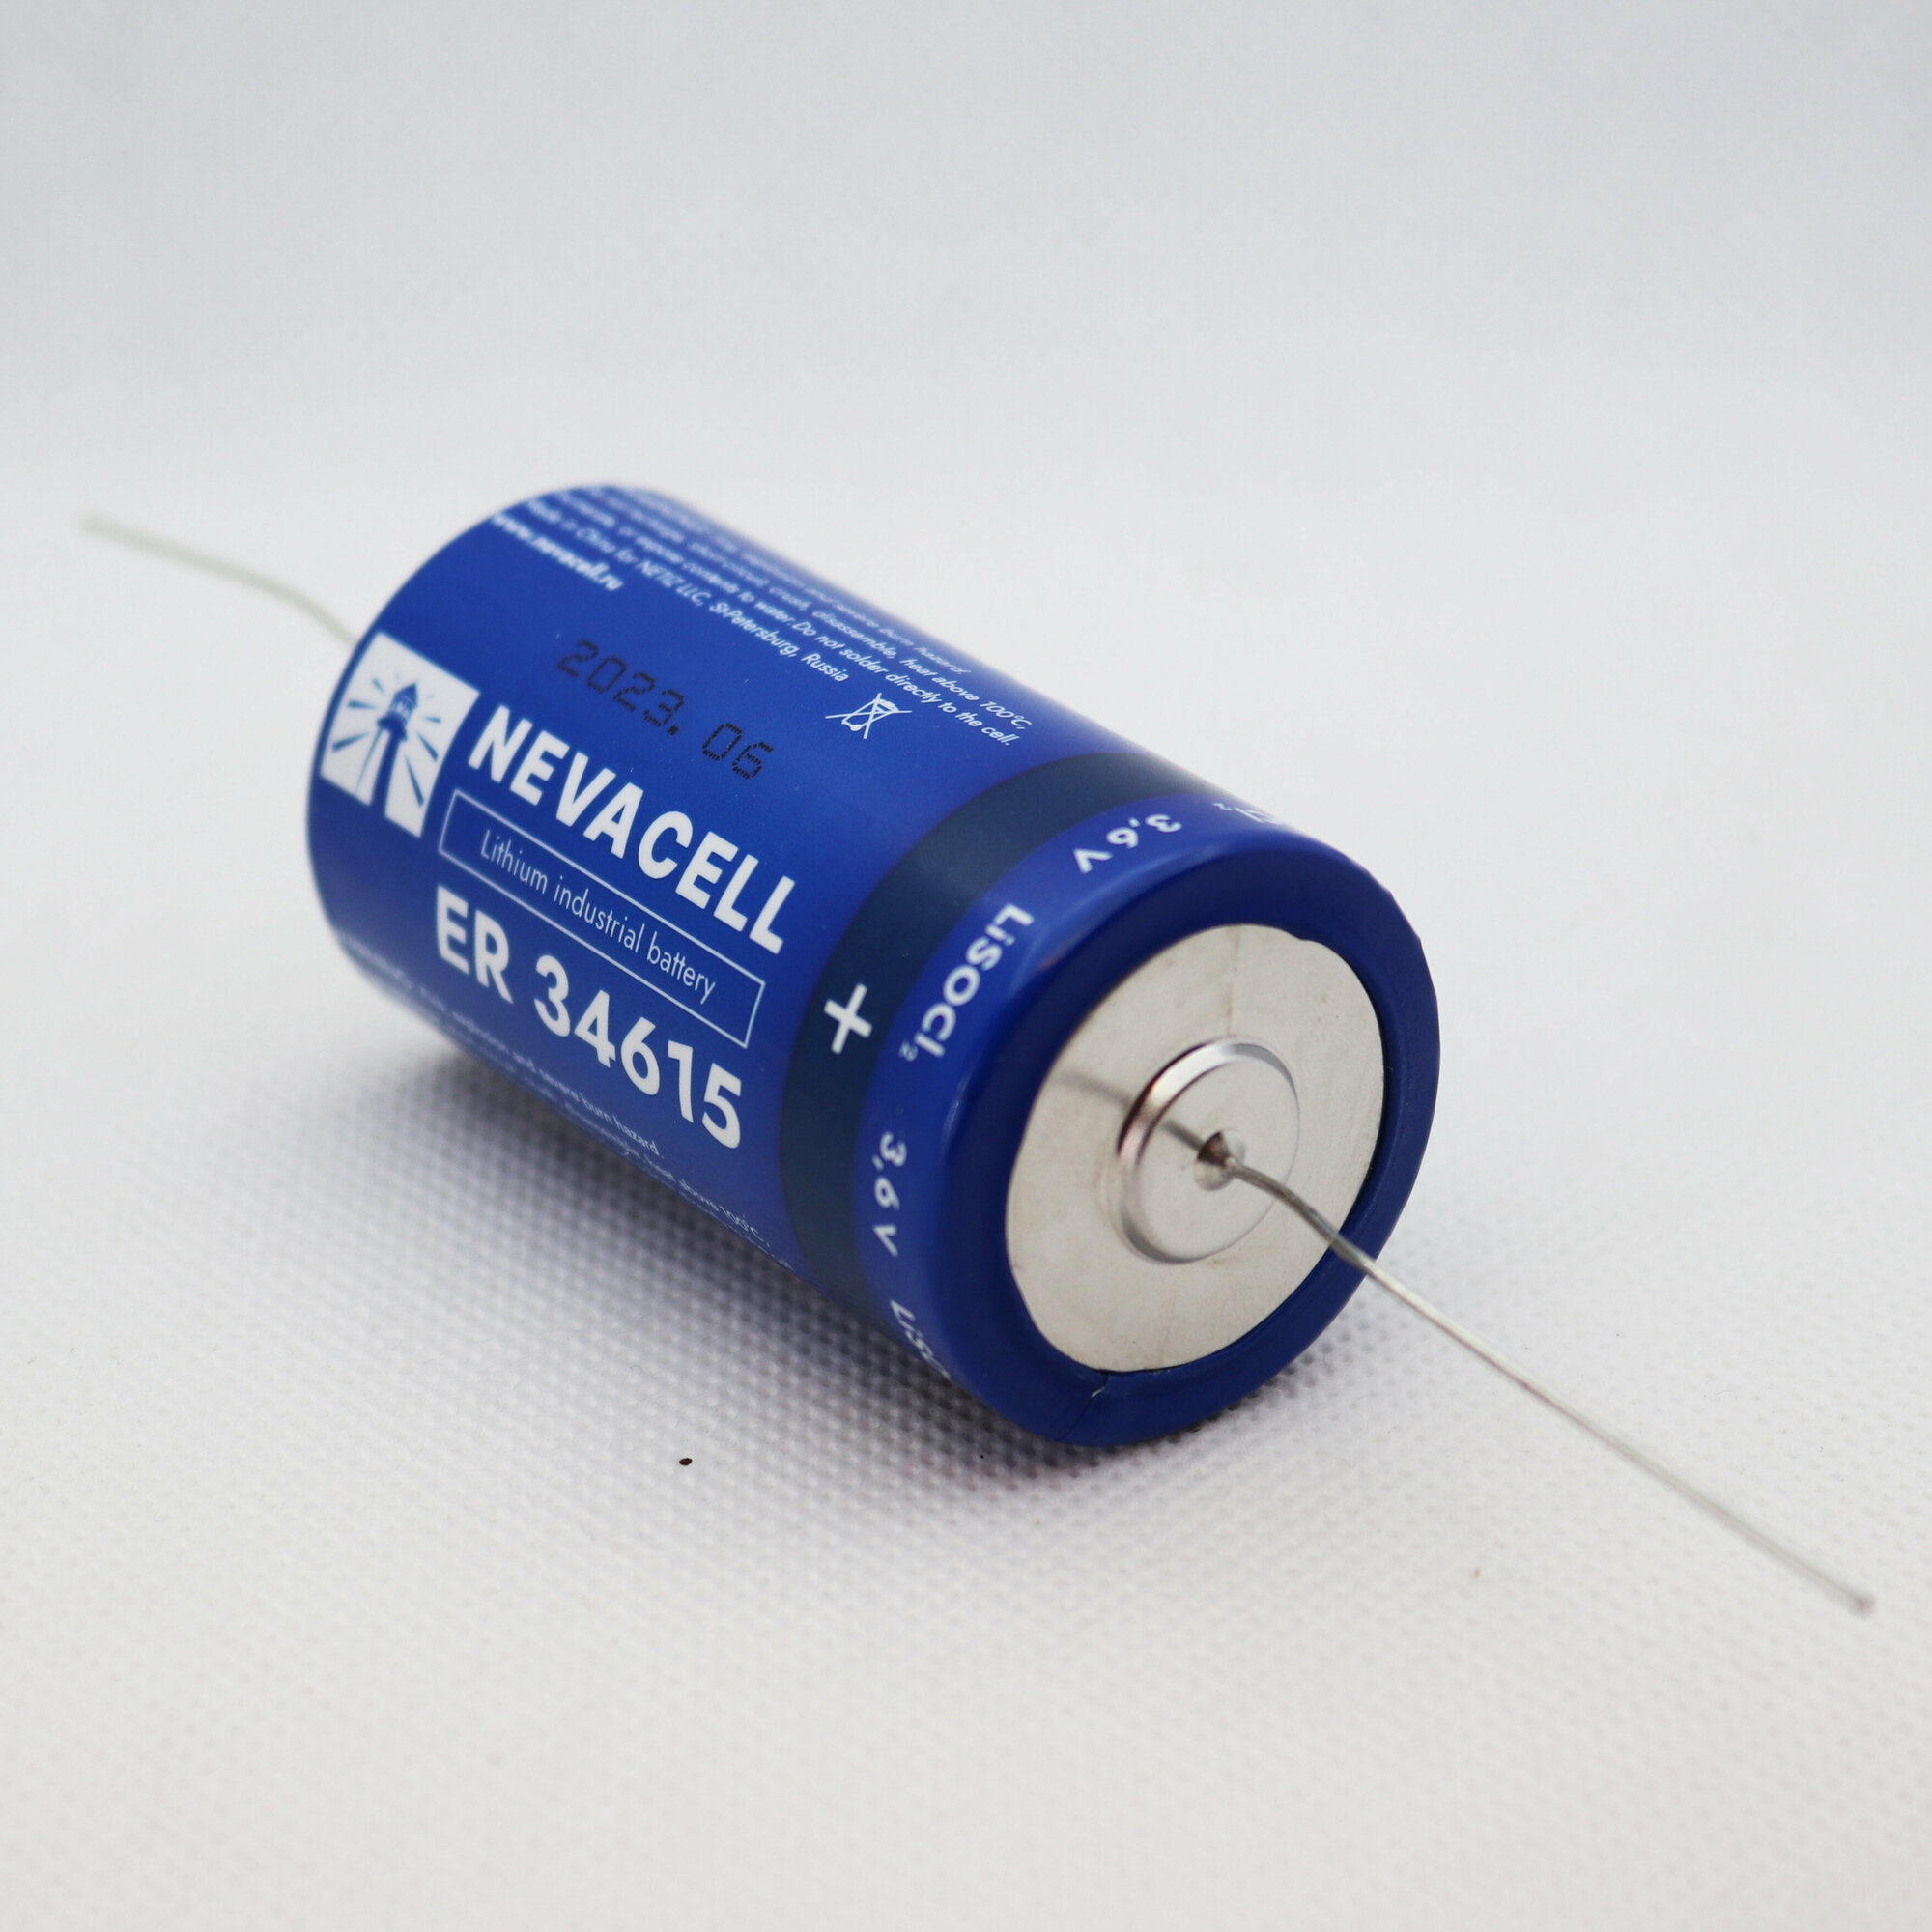 Батарейка литиевая NevaCell ER34615, 3,6В, аксиальные токовыводы